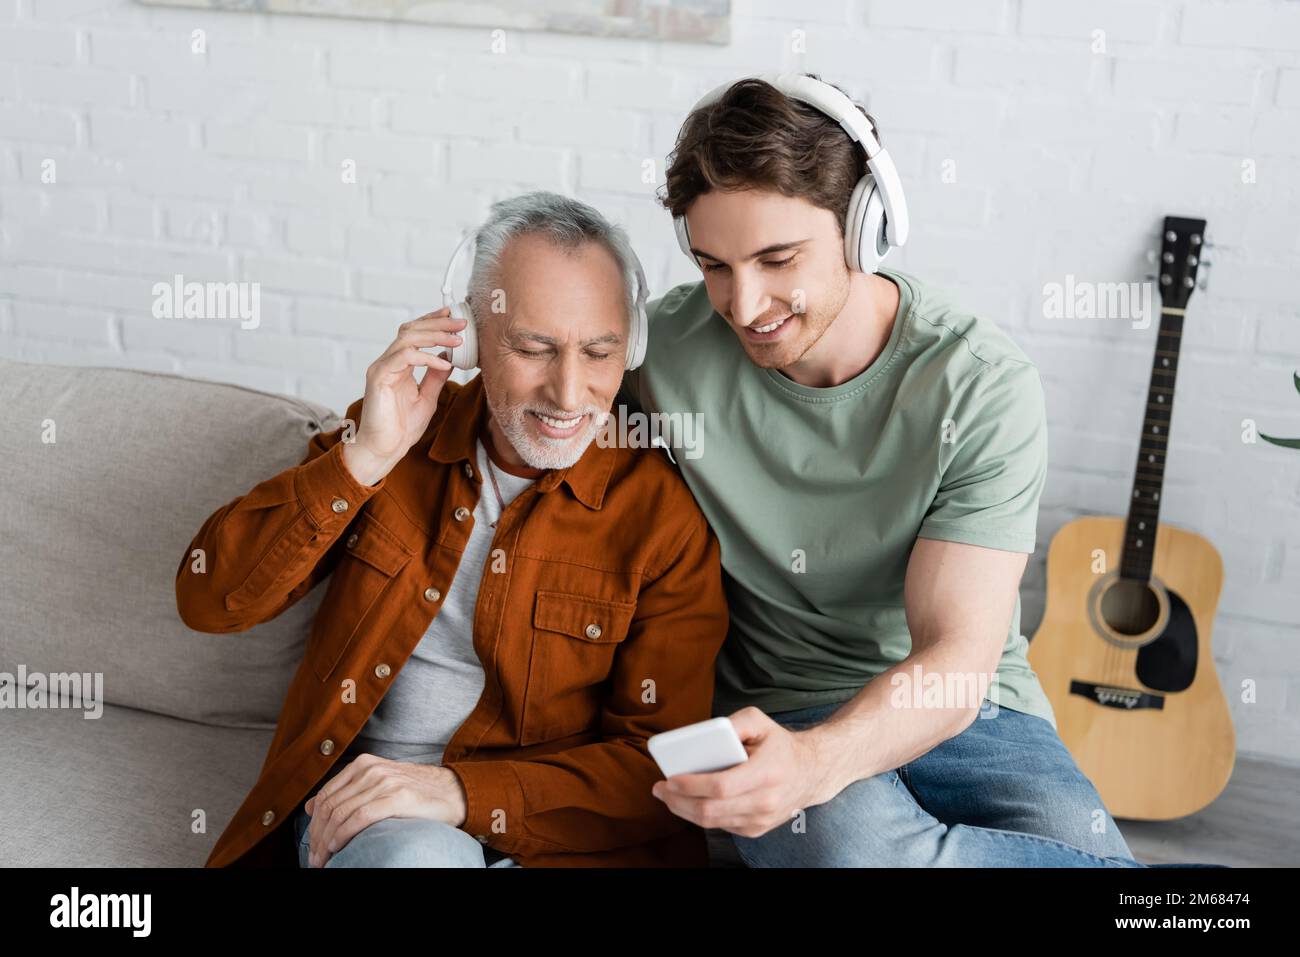 homme souriant montrant un smartphone à un homme aux cheveux gris heureux dans un casque sans fil tout en écoutant de la musique à la maison, image de stock Banque D'Images